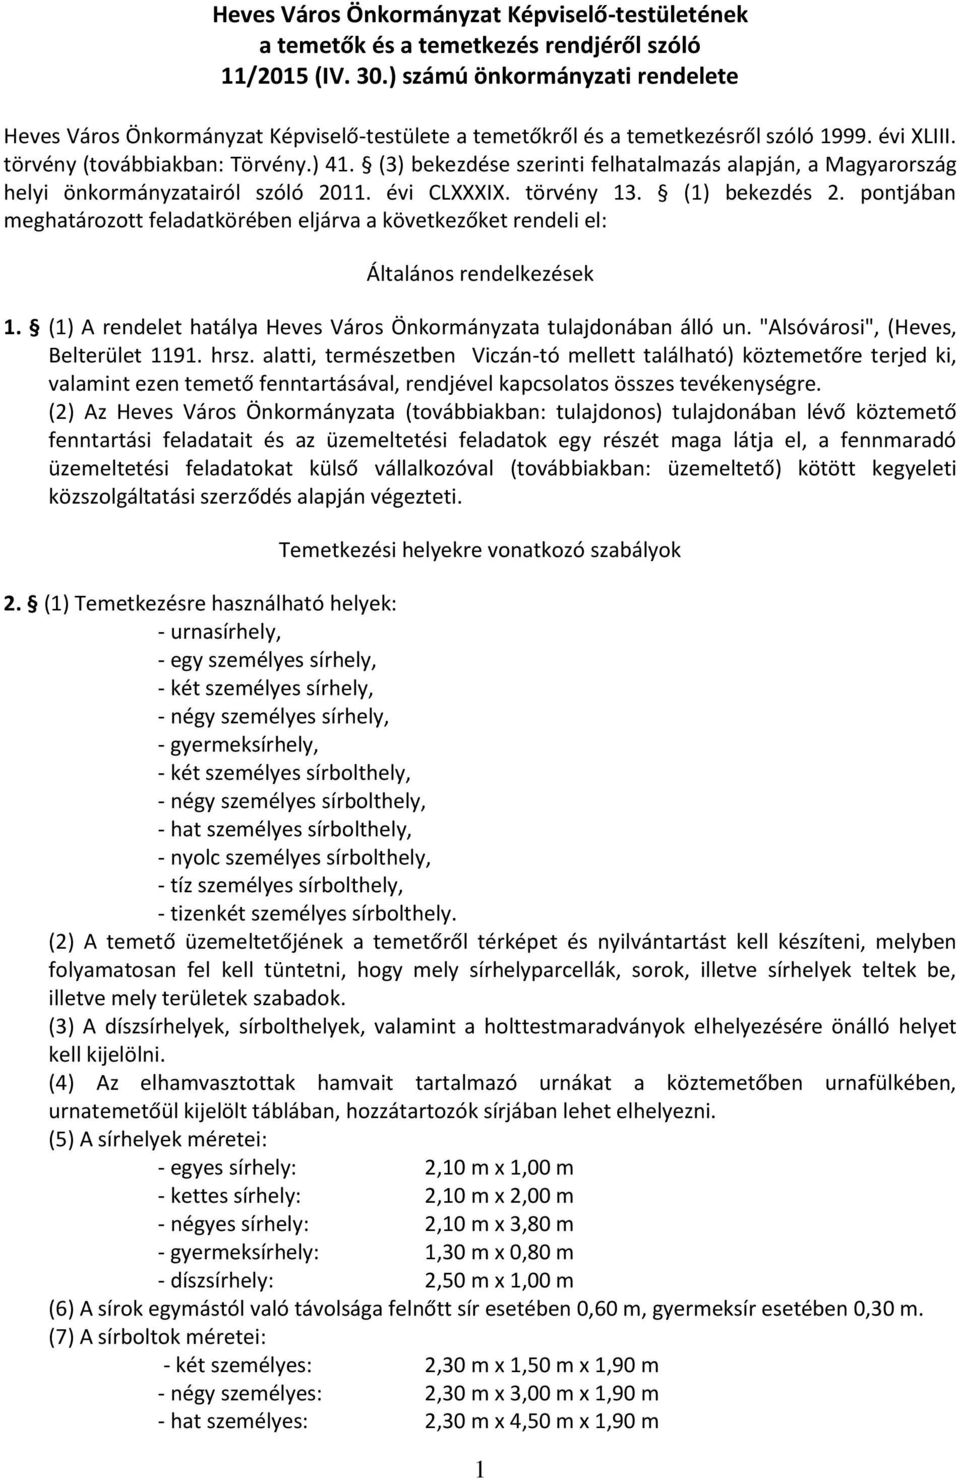 (3) bekezdése szerinti felhatalmazás alapján, a Magyarország helyi önkormányzatairól szóló 2011. évi CLXXXIX. törvény 13. (1) bekezdés 2.